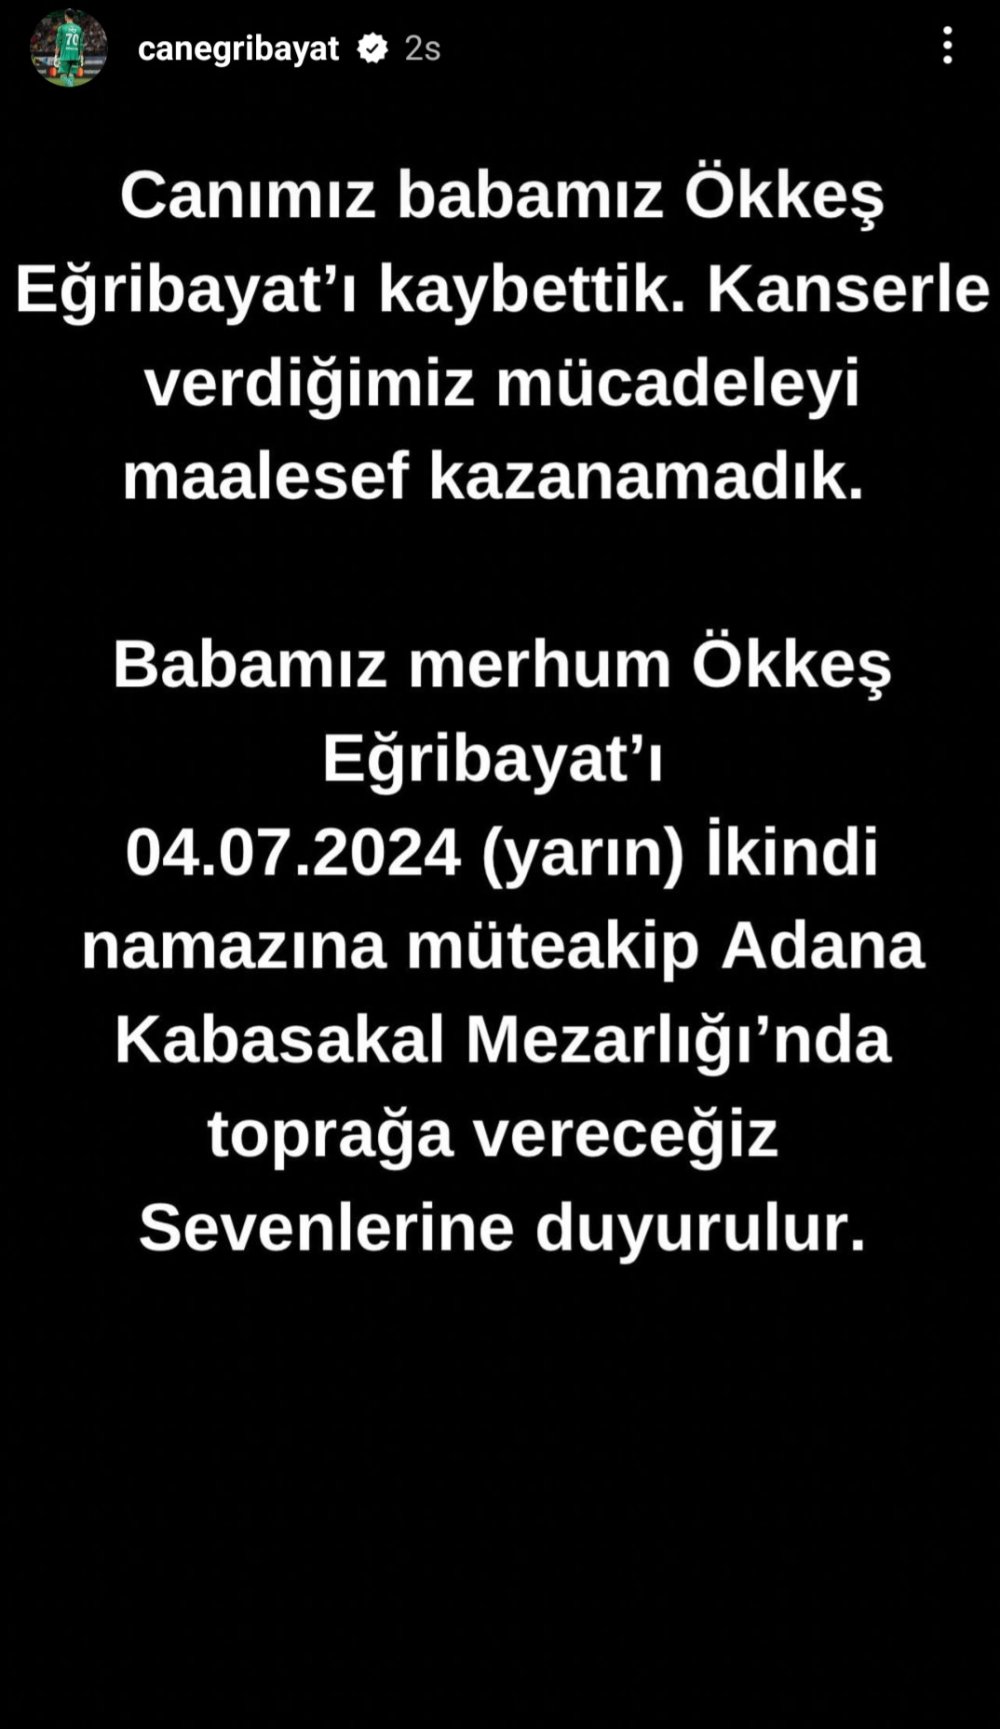 Fenerbahçeli futbolcu İrfan Can Eğribayat'ın acı günü